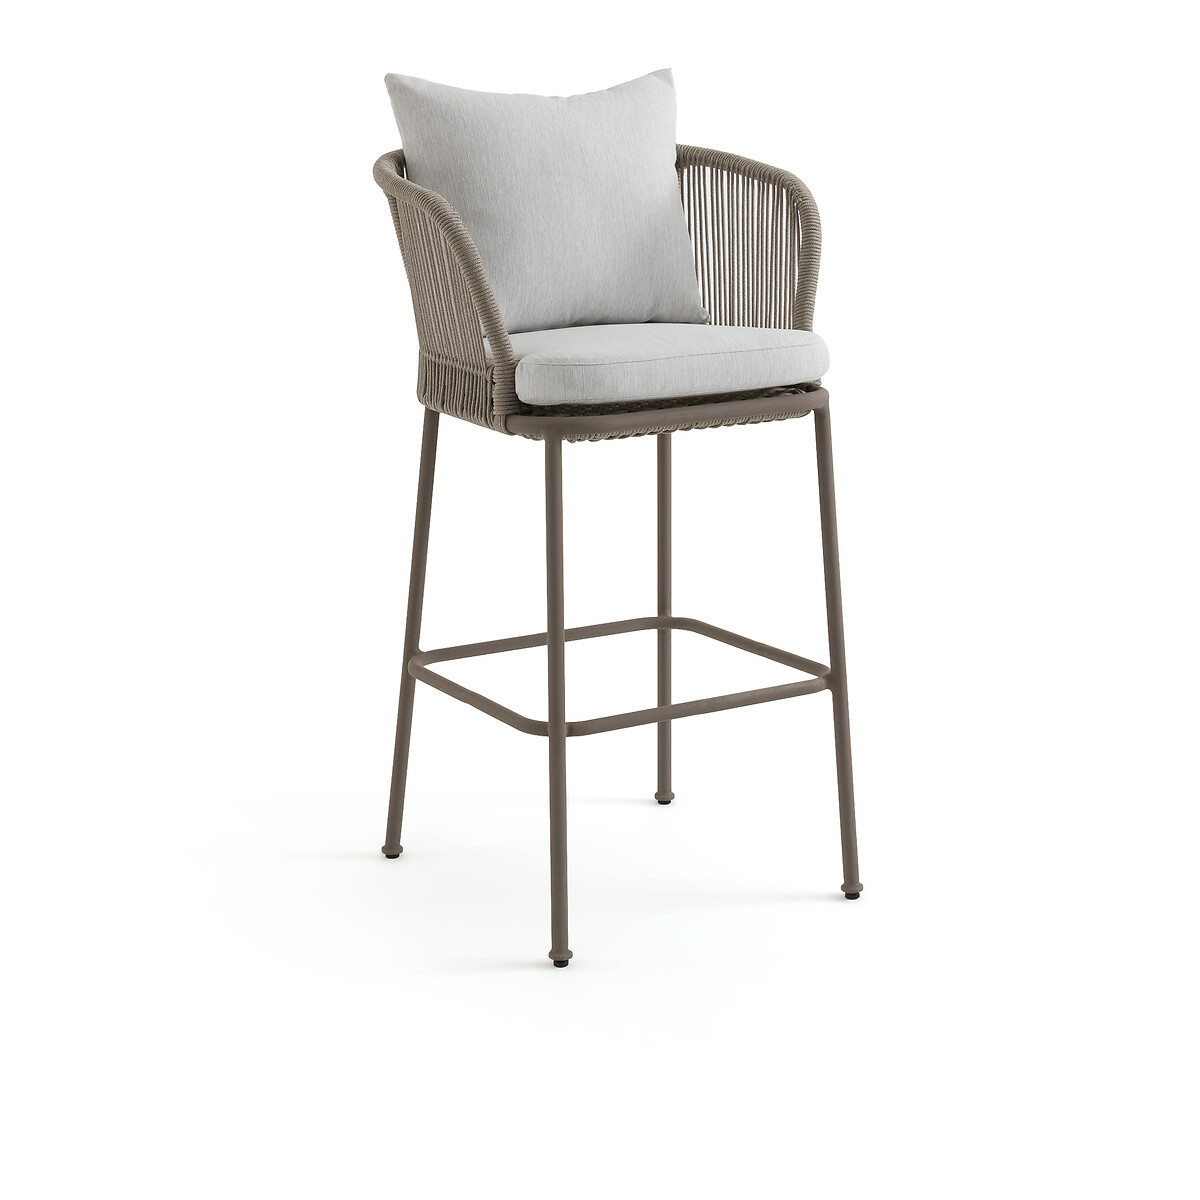 Кресло столовое для сада высокое Cabestan единый размер каштановый кресло садовое cabestan дизайн э галлина единый размер каштановый